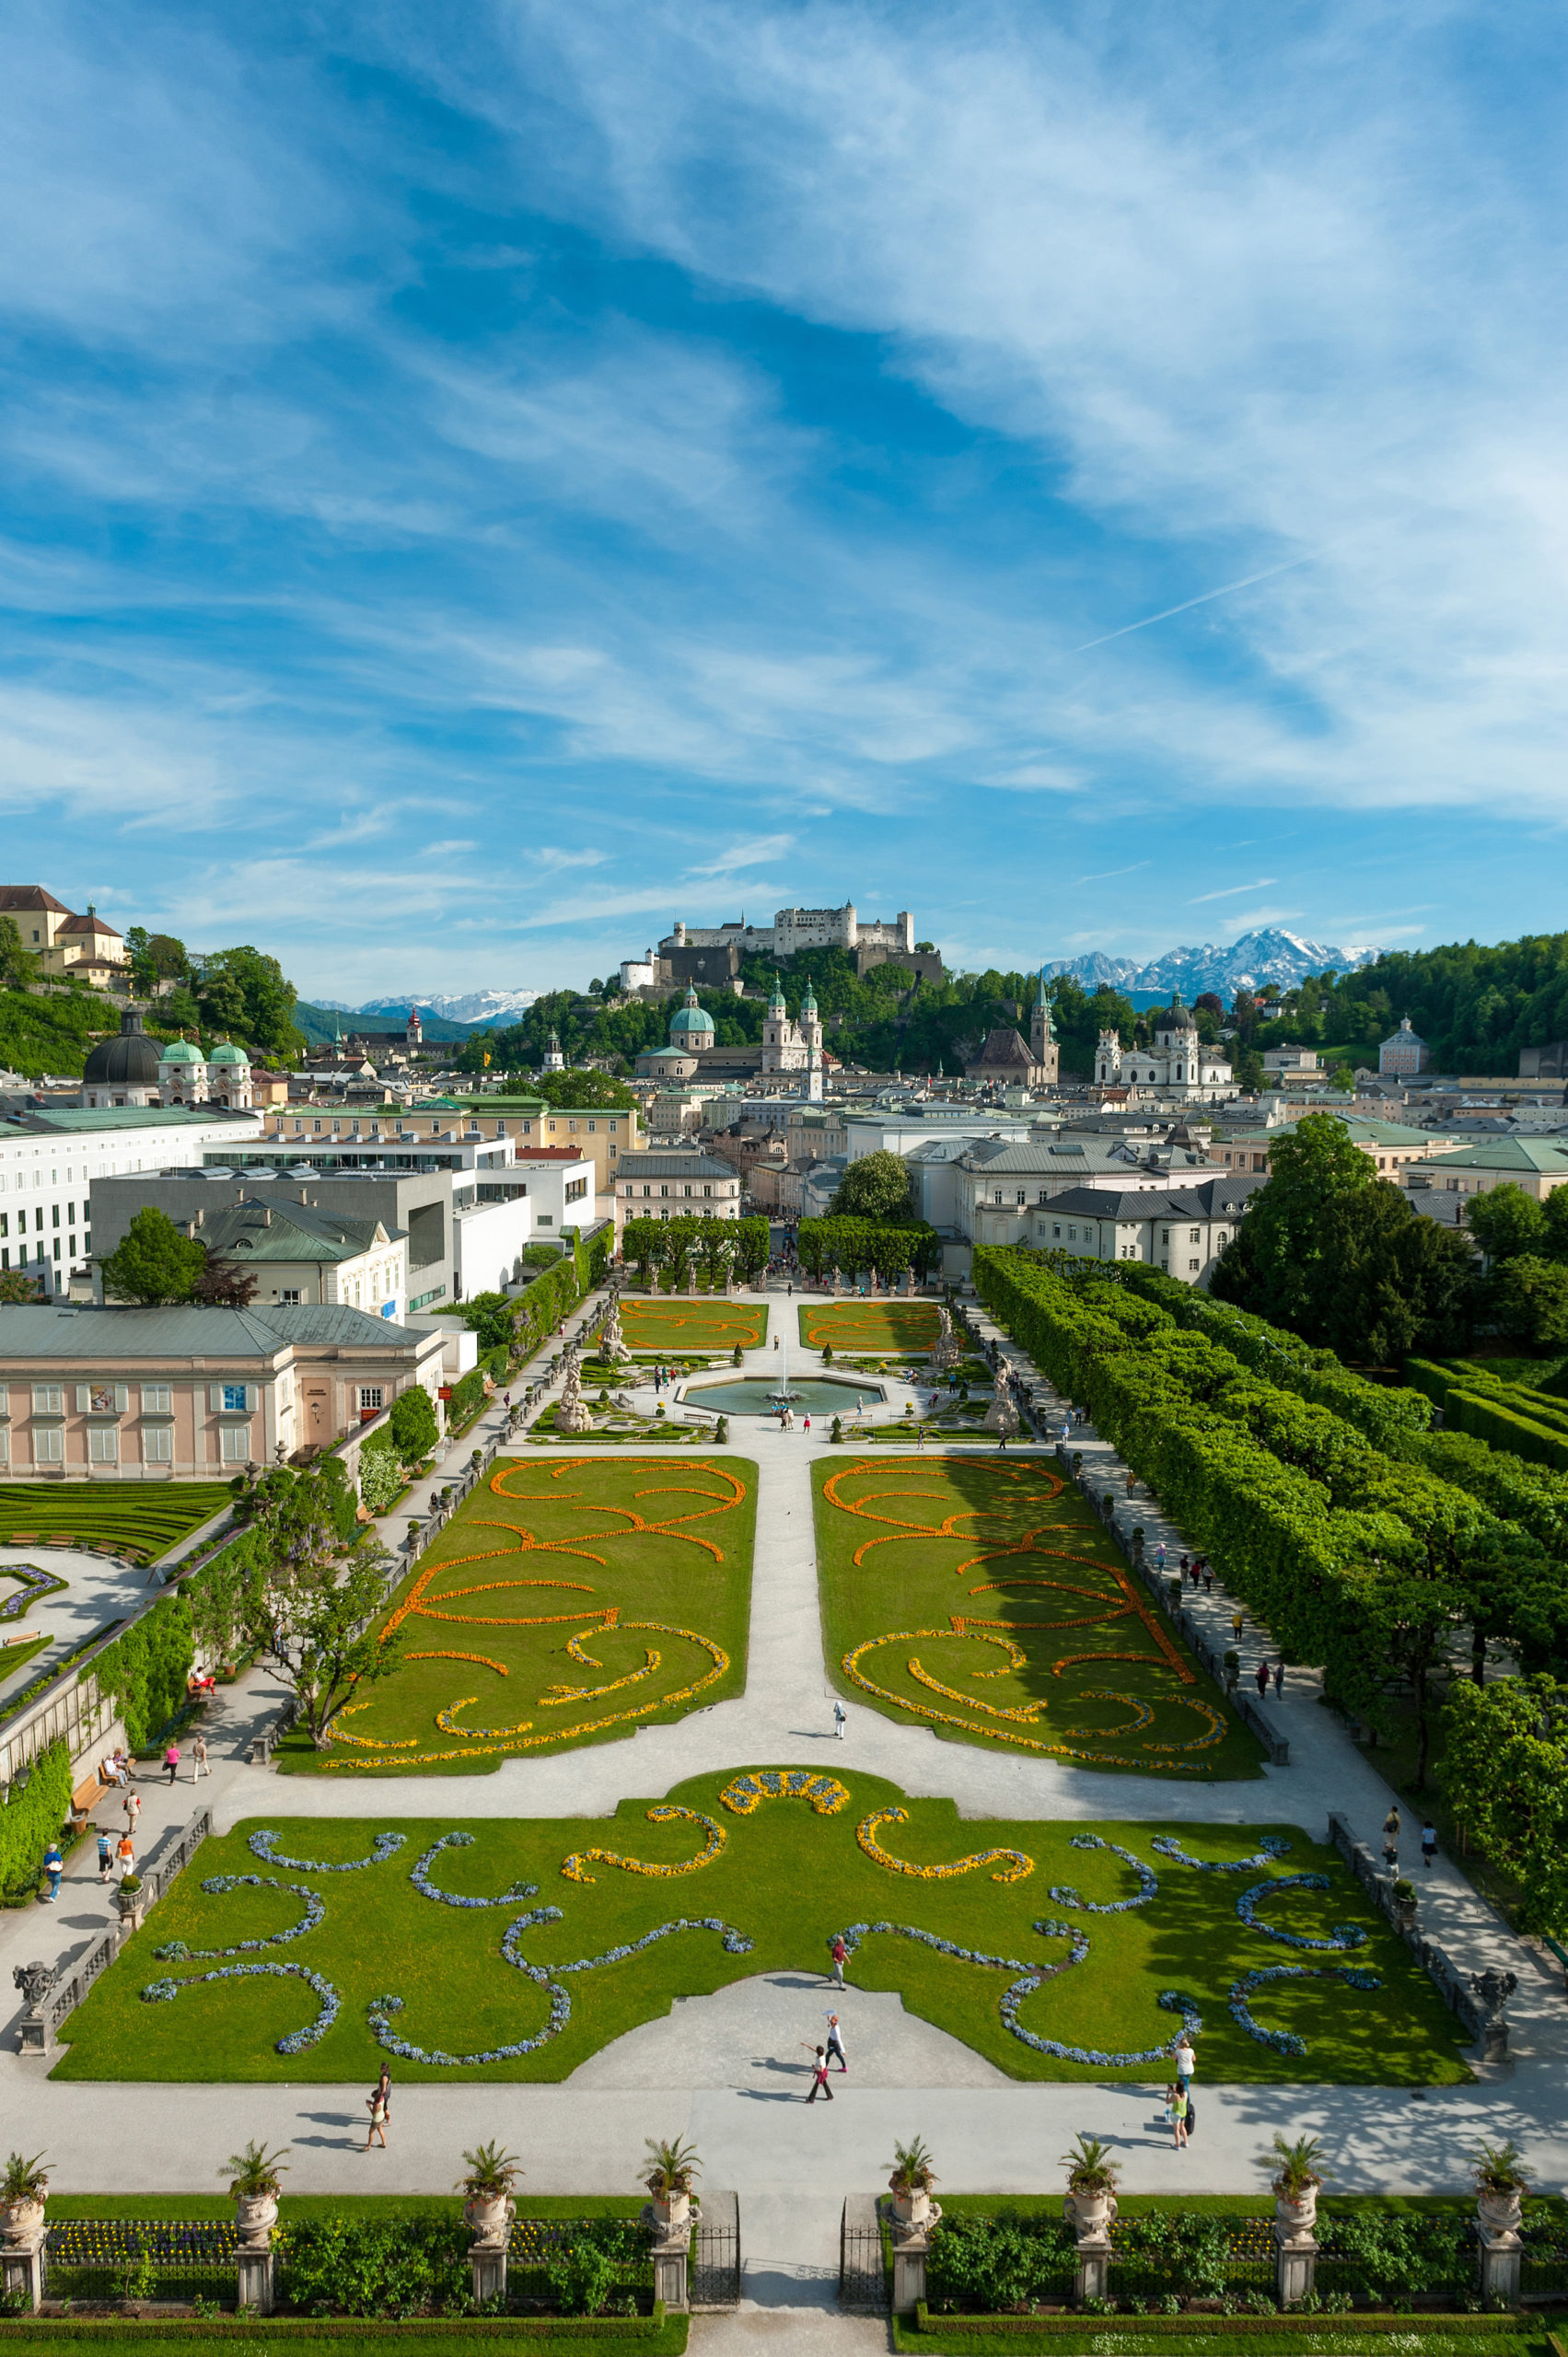  © Tourismus Salzburg - Blick über den Mirabellgarten auf die Salzburger Altstadt